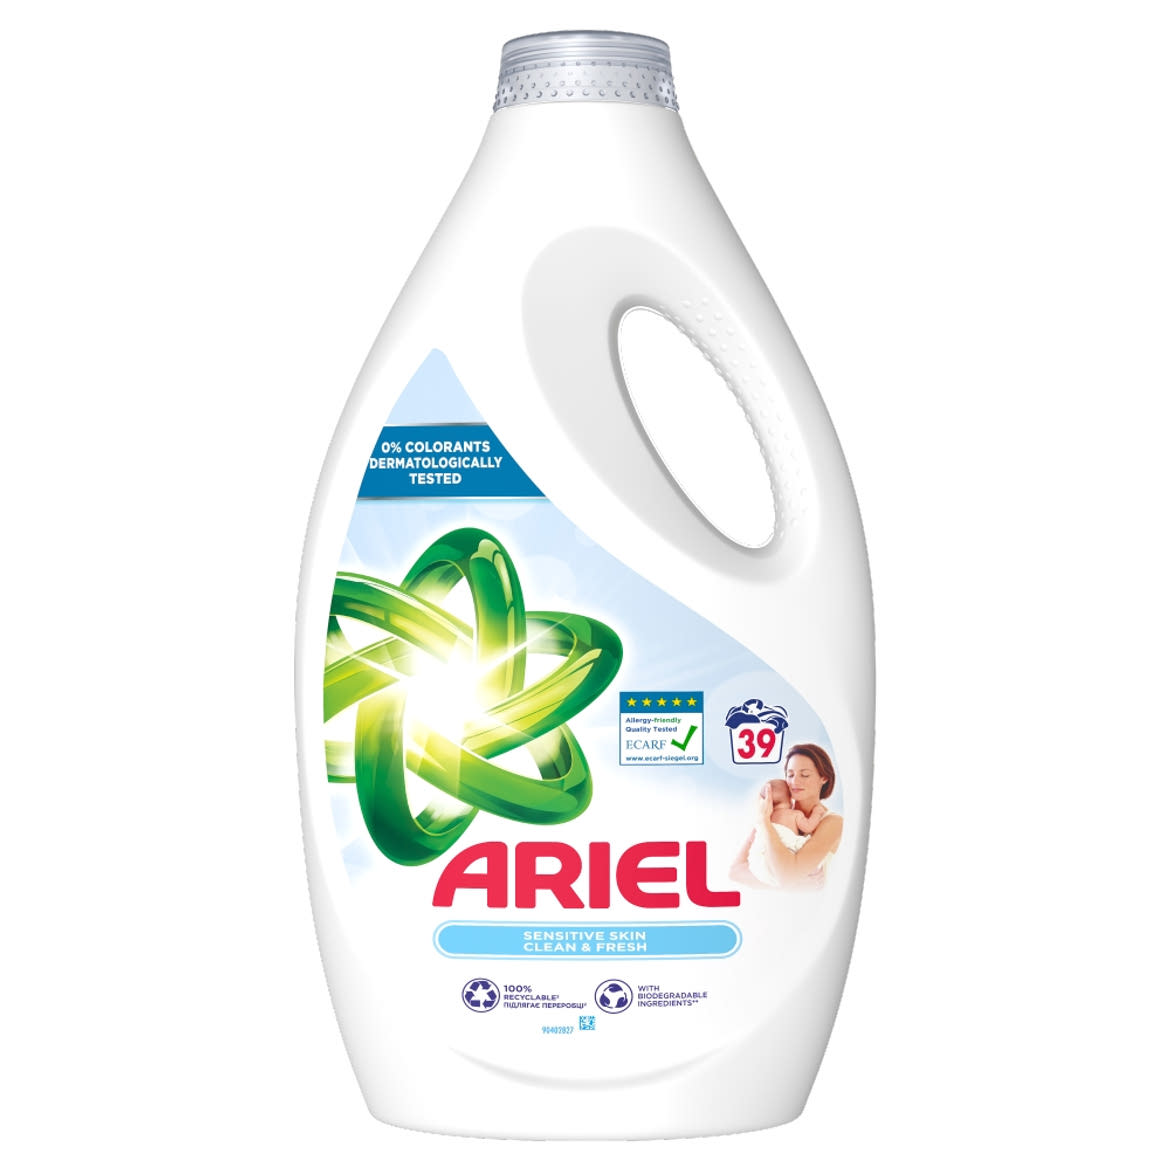 Ariel Folyékony Mosószer, Sensitive Skin Clean & Fresh, 39 mosás